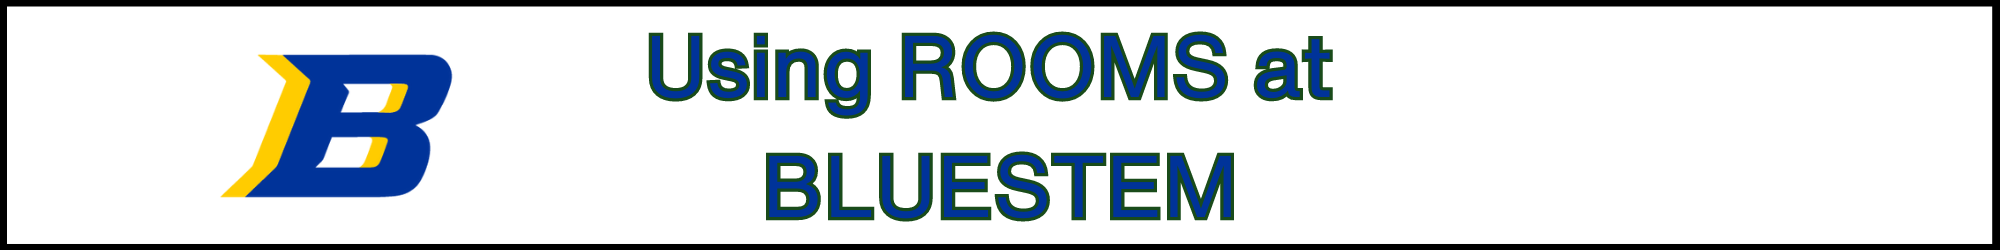 Rooms at Bluestem